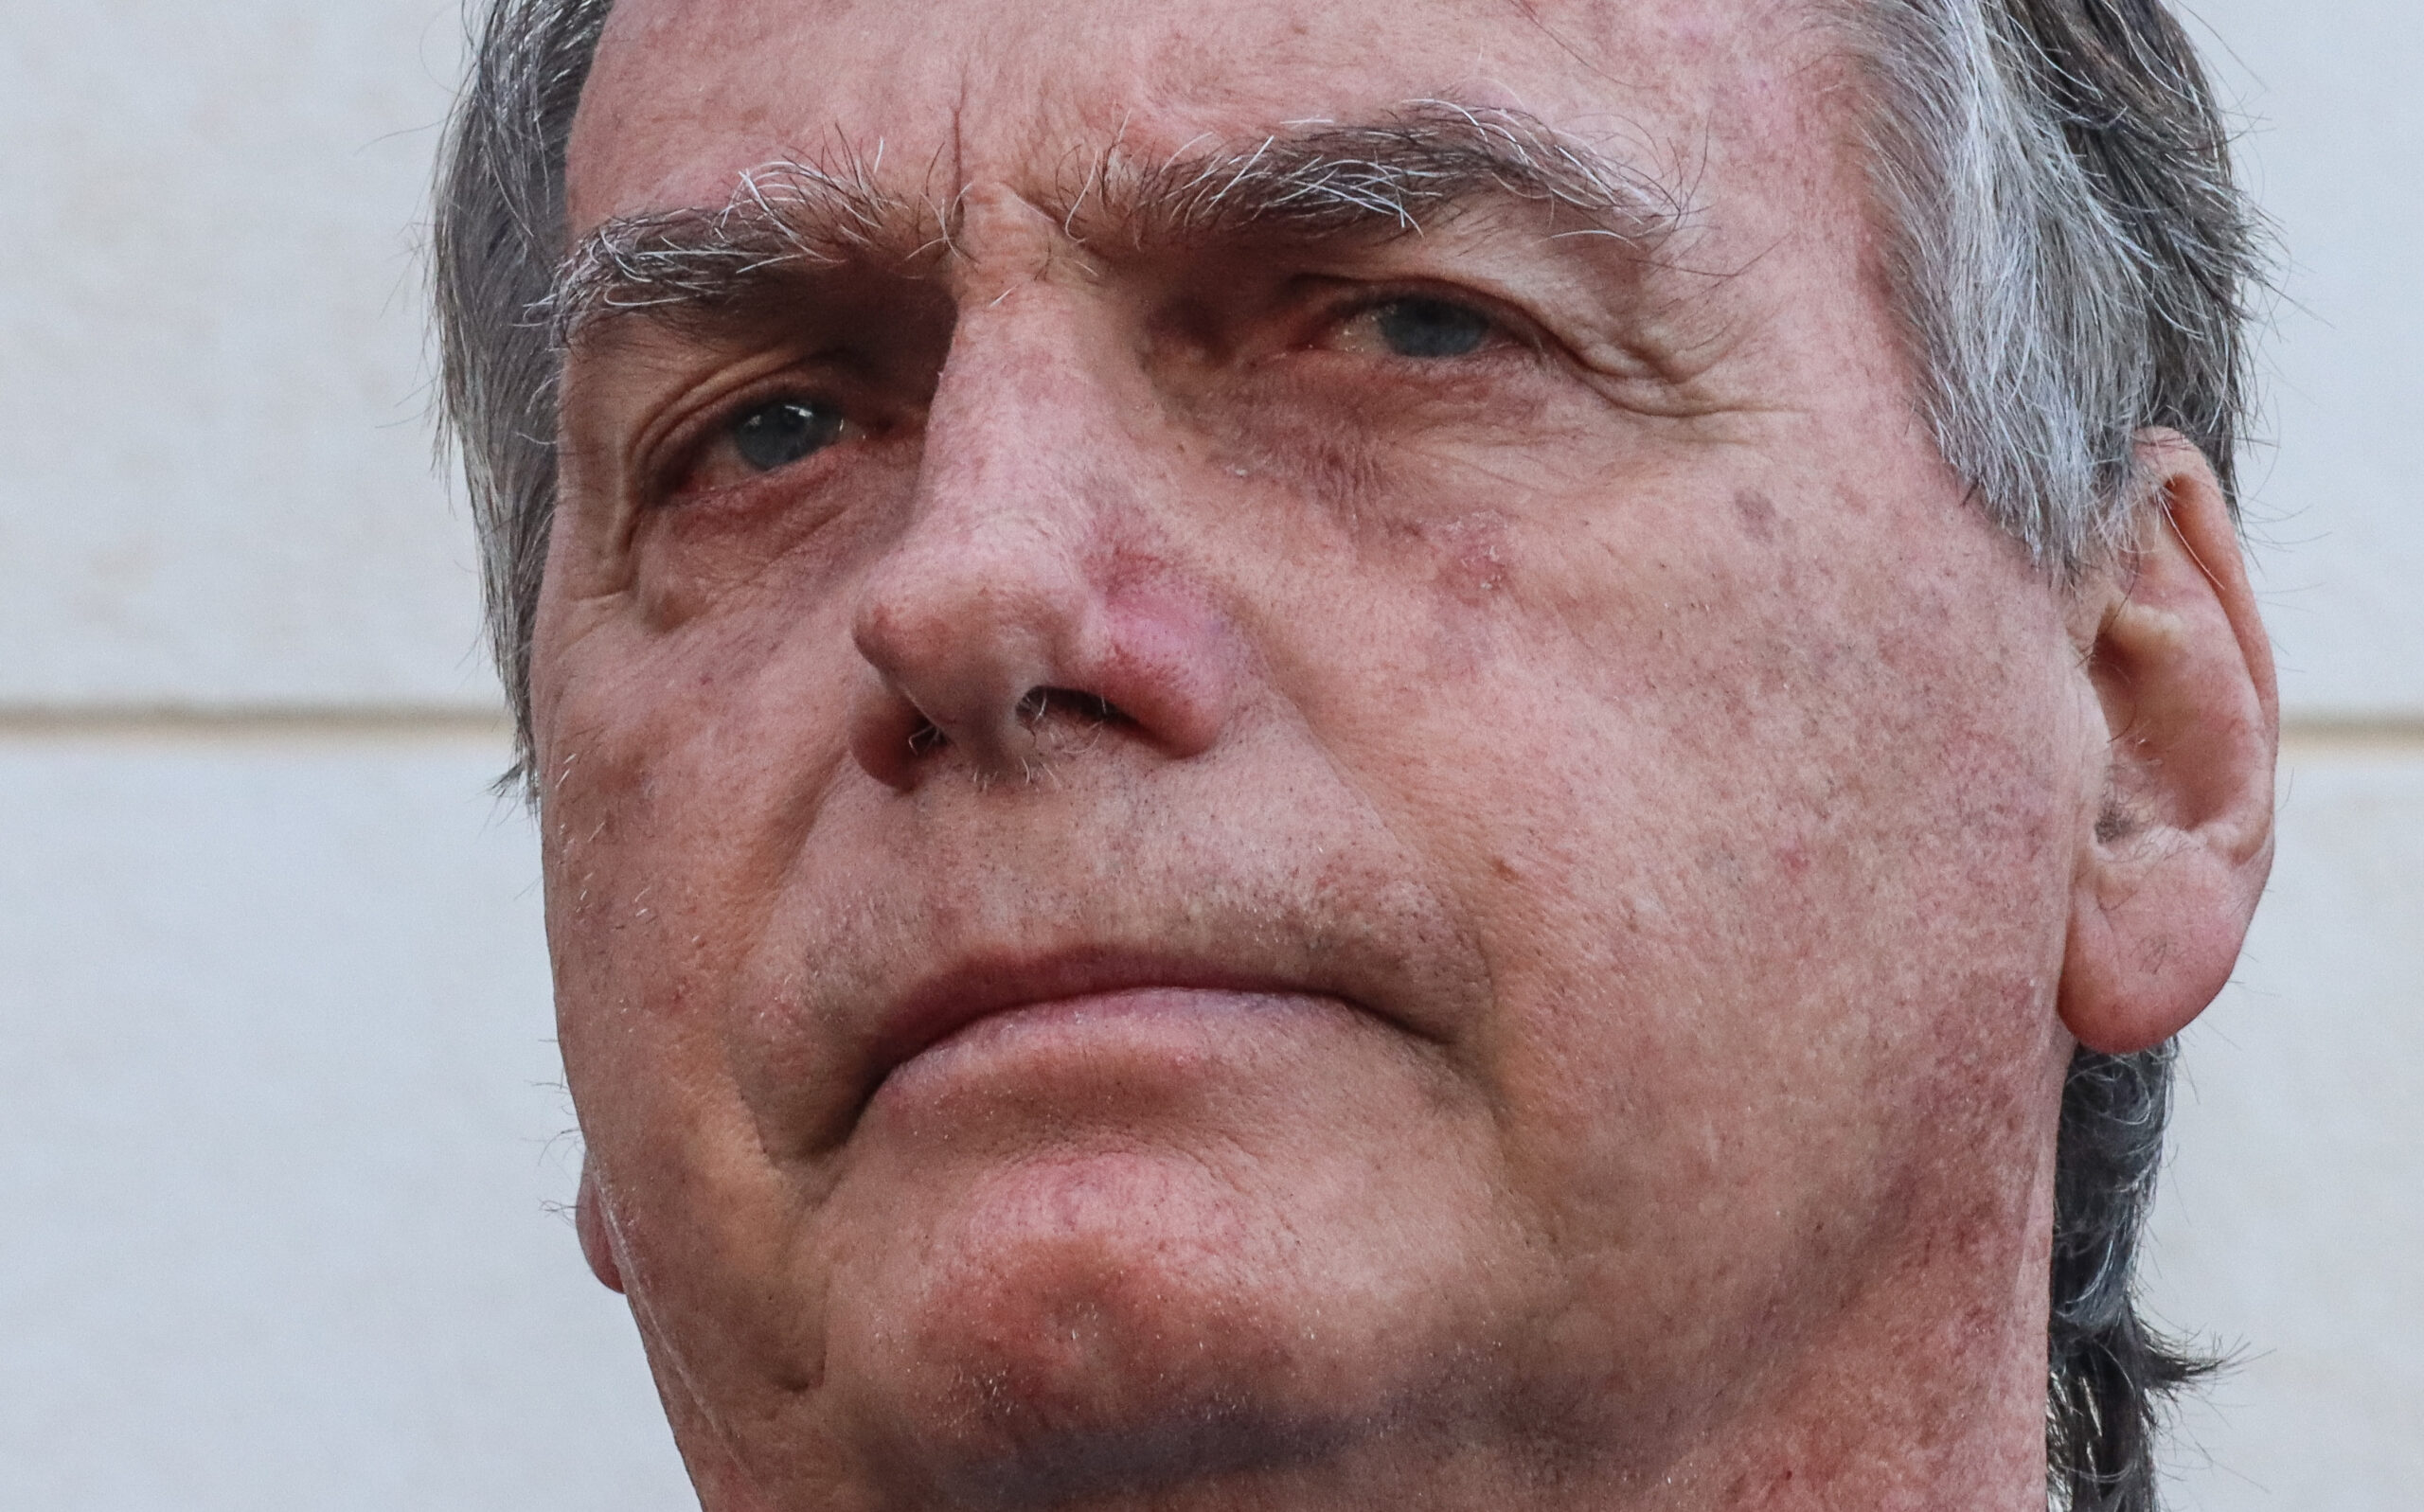 Procurador: Delação é fraca e denúncia contra Bolsonaro não é iminente